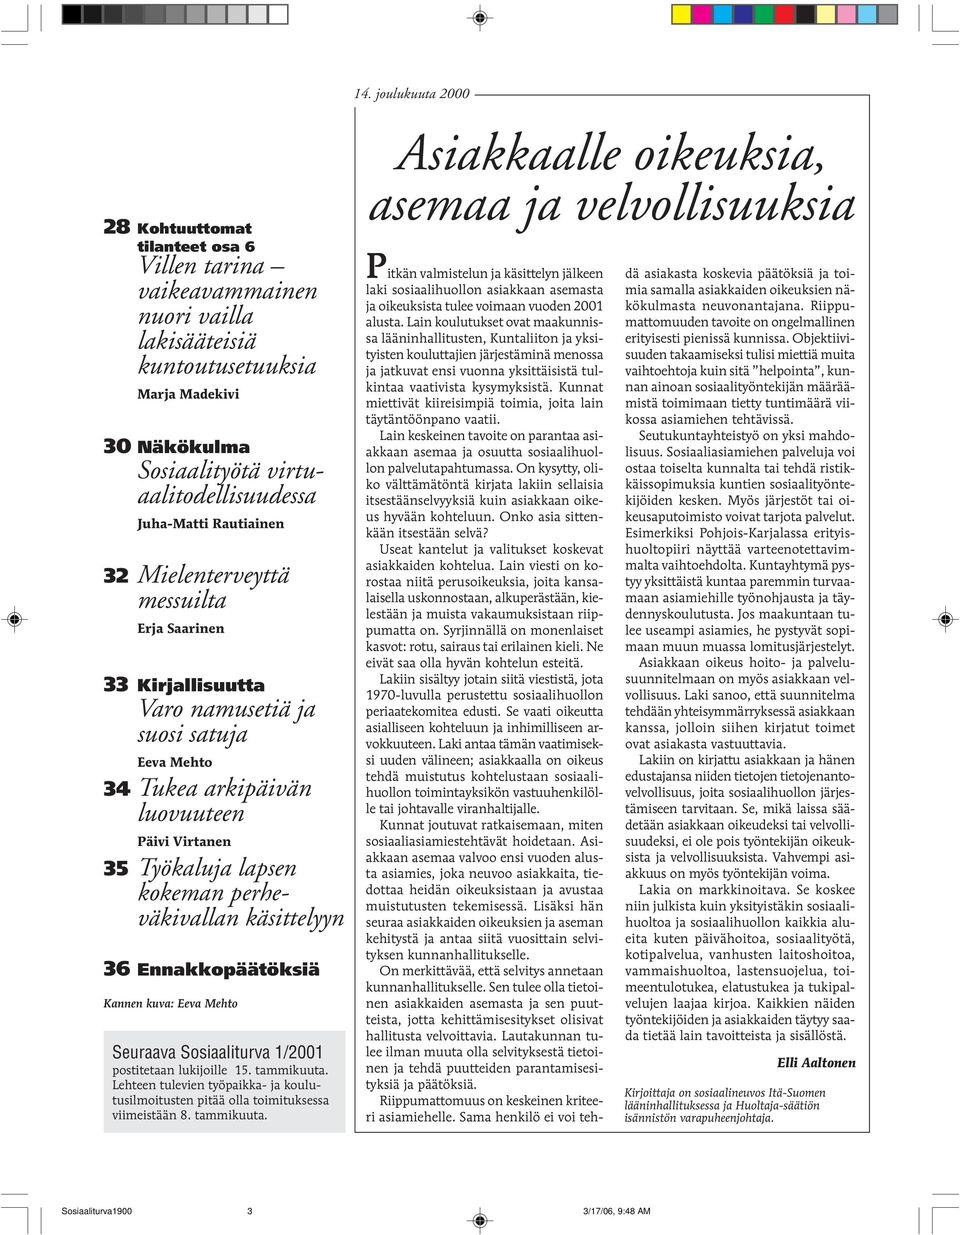 perheväkivallan käsittelyyn 36 Ennakkopäätöksiä Kannen kuva: Eeva Mehto Seuraava Sosiaaliturva 1/2001 postitetaan lukijoille 15. tammikuuta.